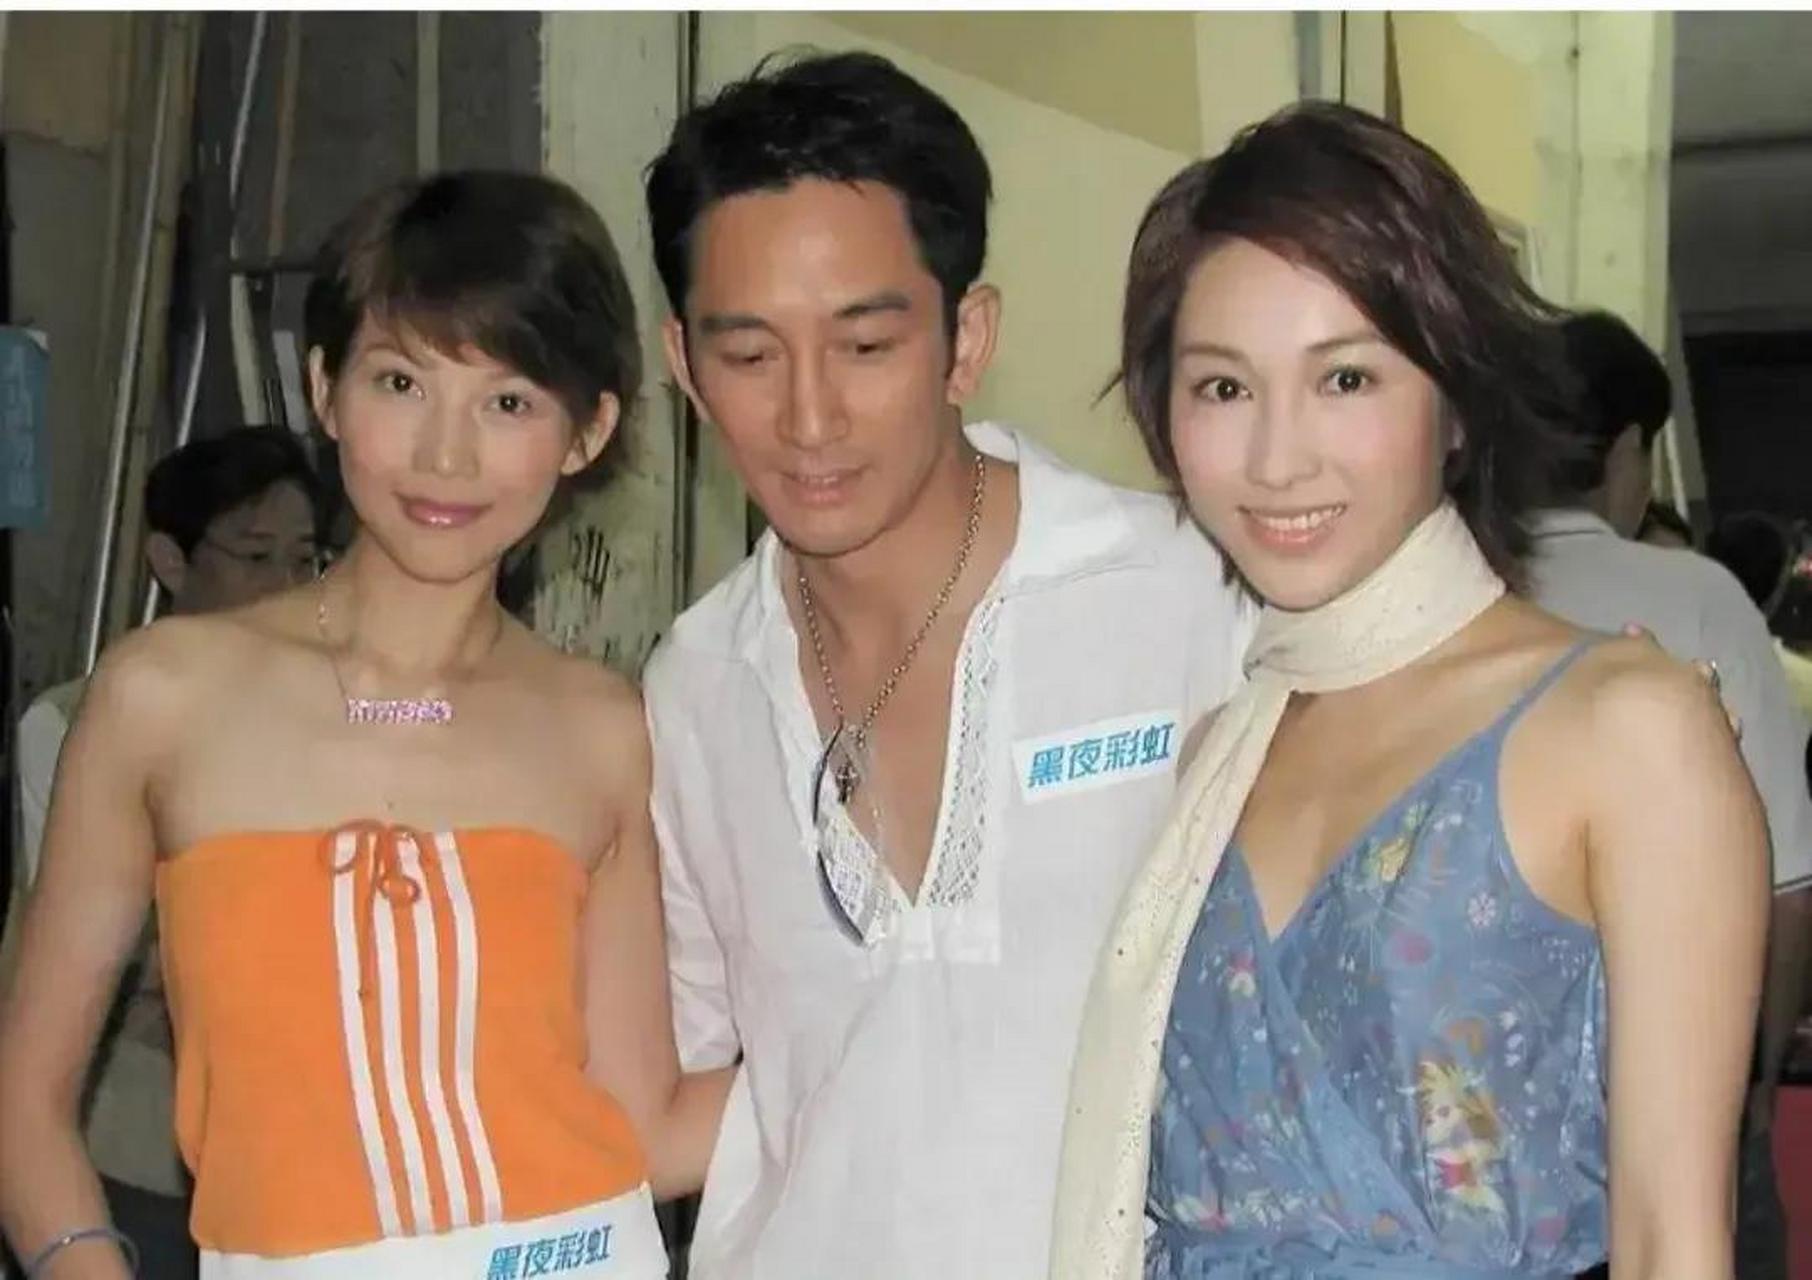 多年前,蔡少芬,吴启华和黎姿曾一起同框,这张照片令人回忆起那个年代